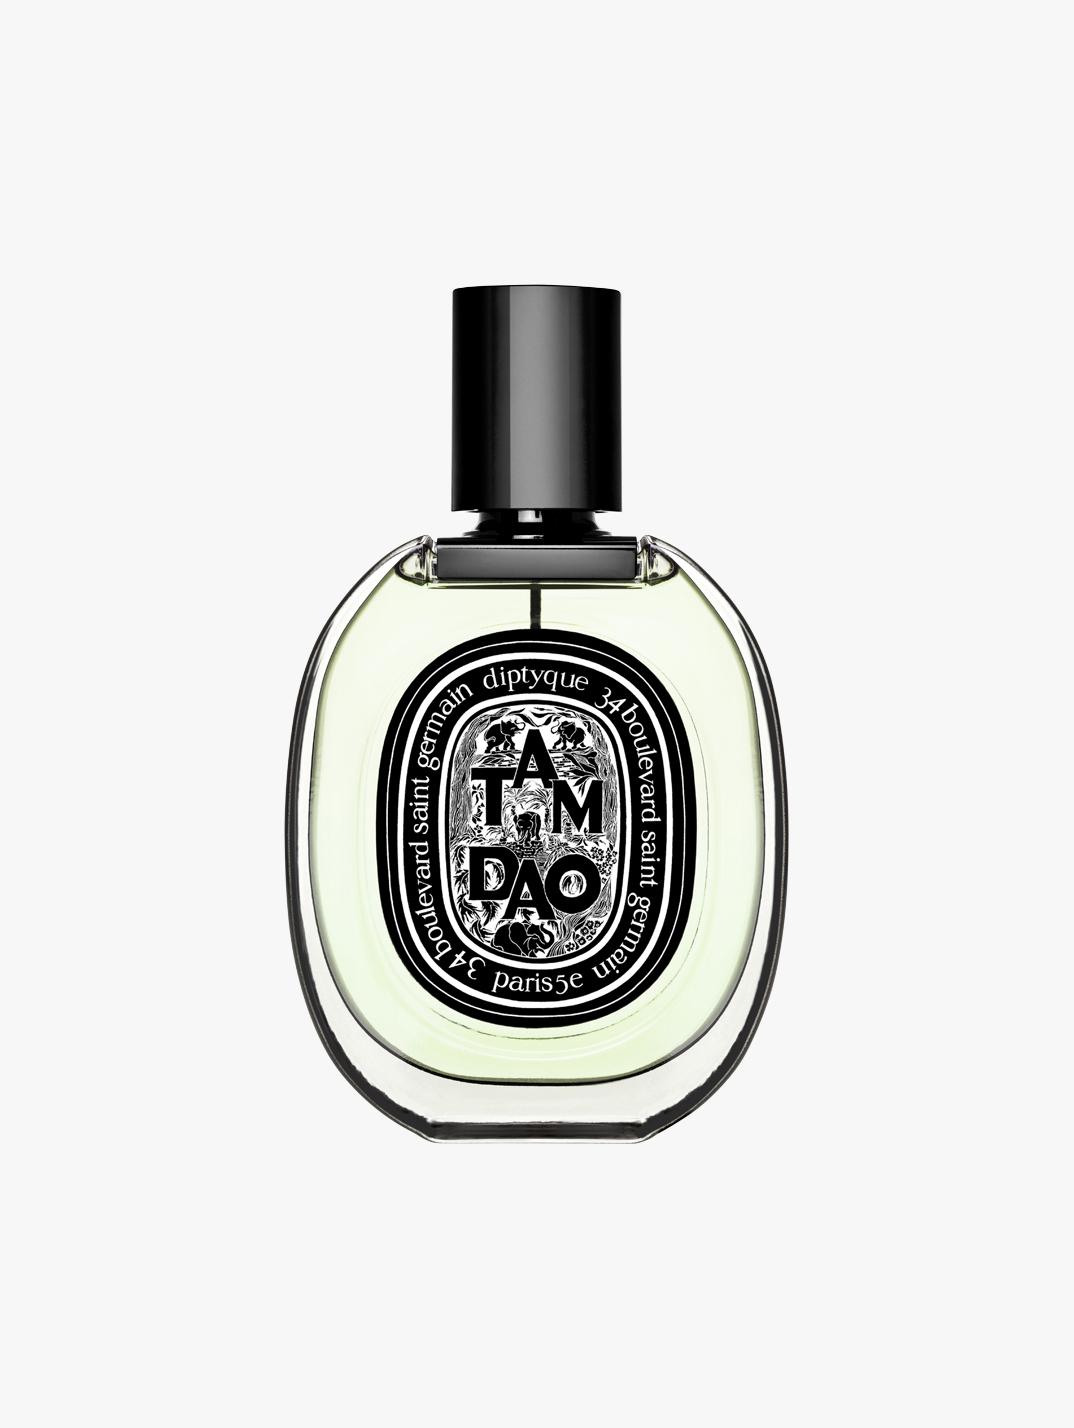 Men's Fragrance, Cologne & Perfume for Men